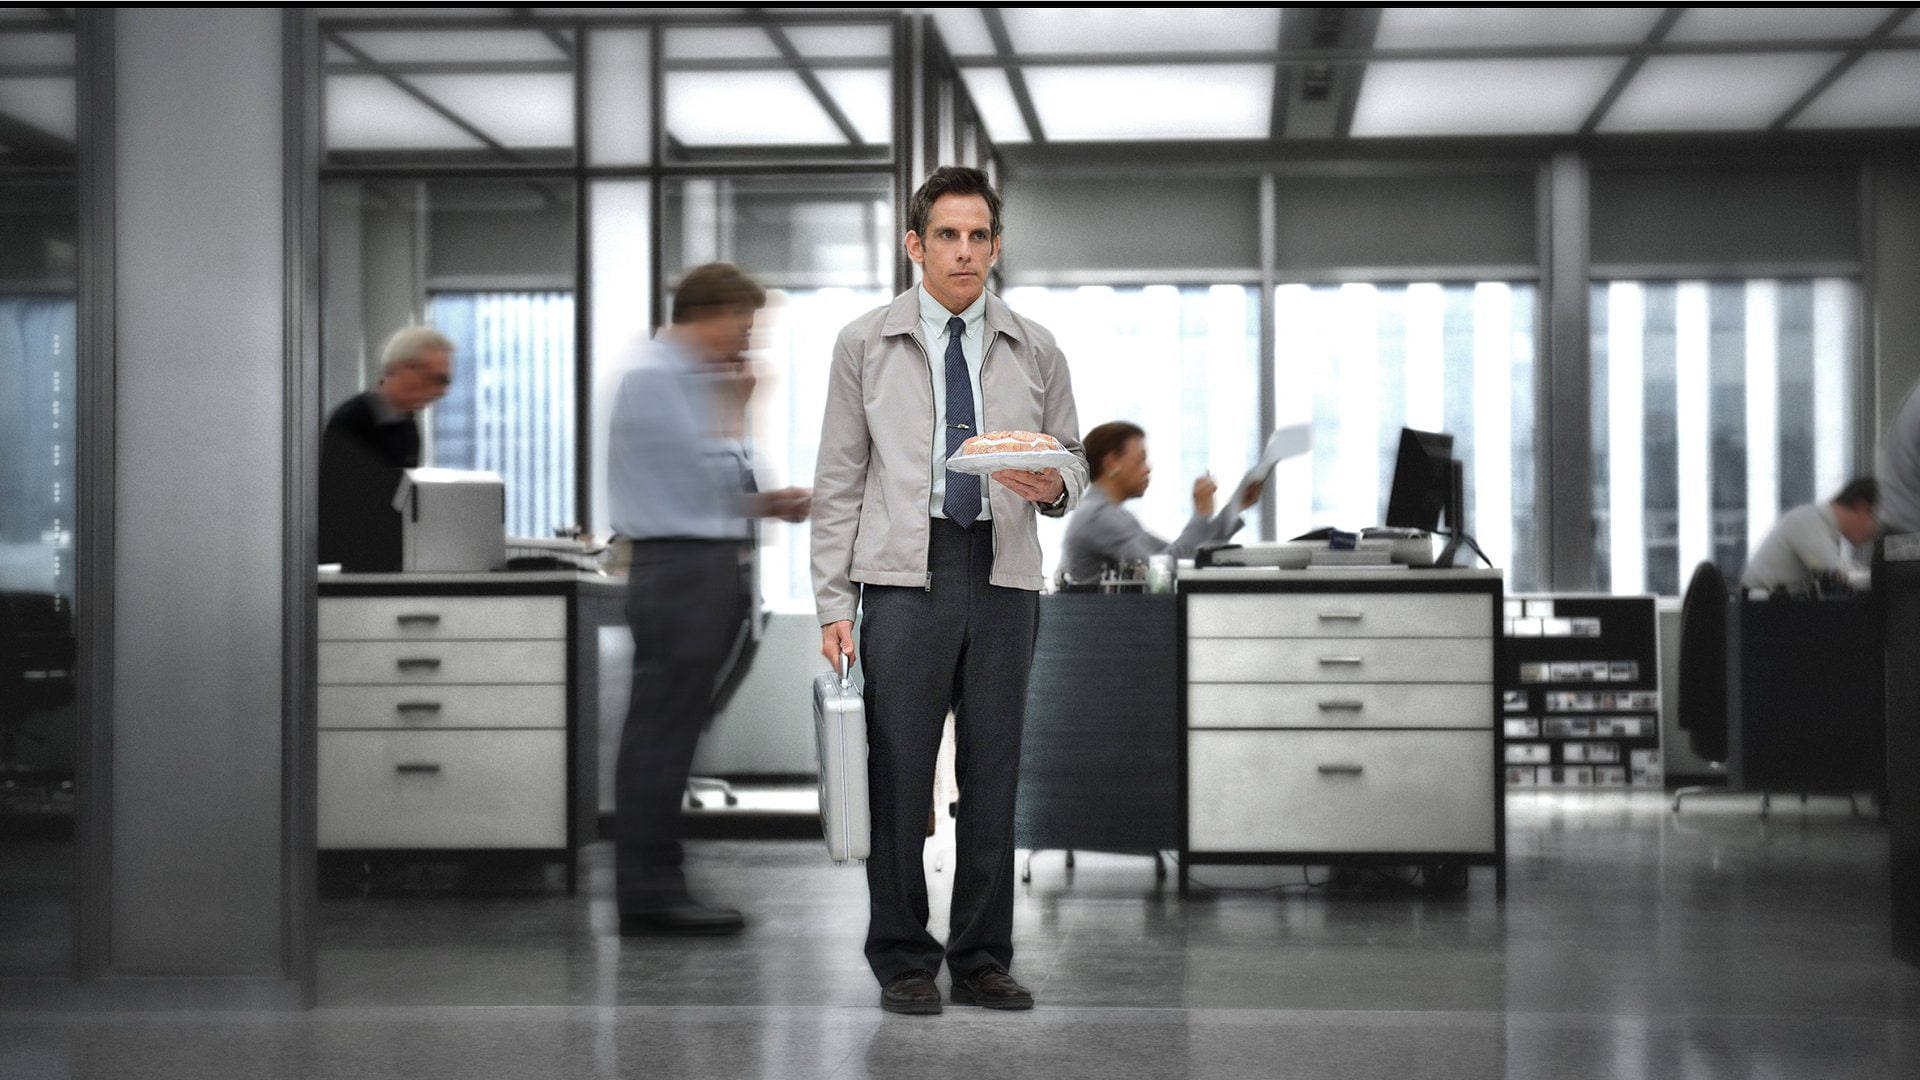 Ben Stiller In The Office Background